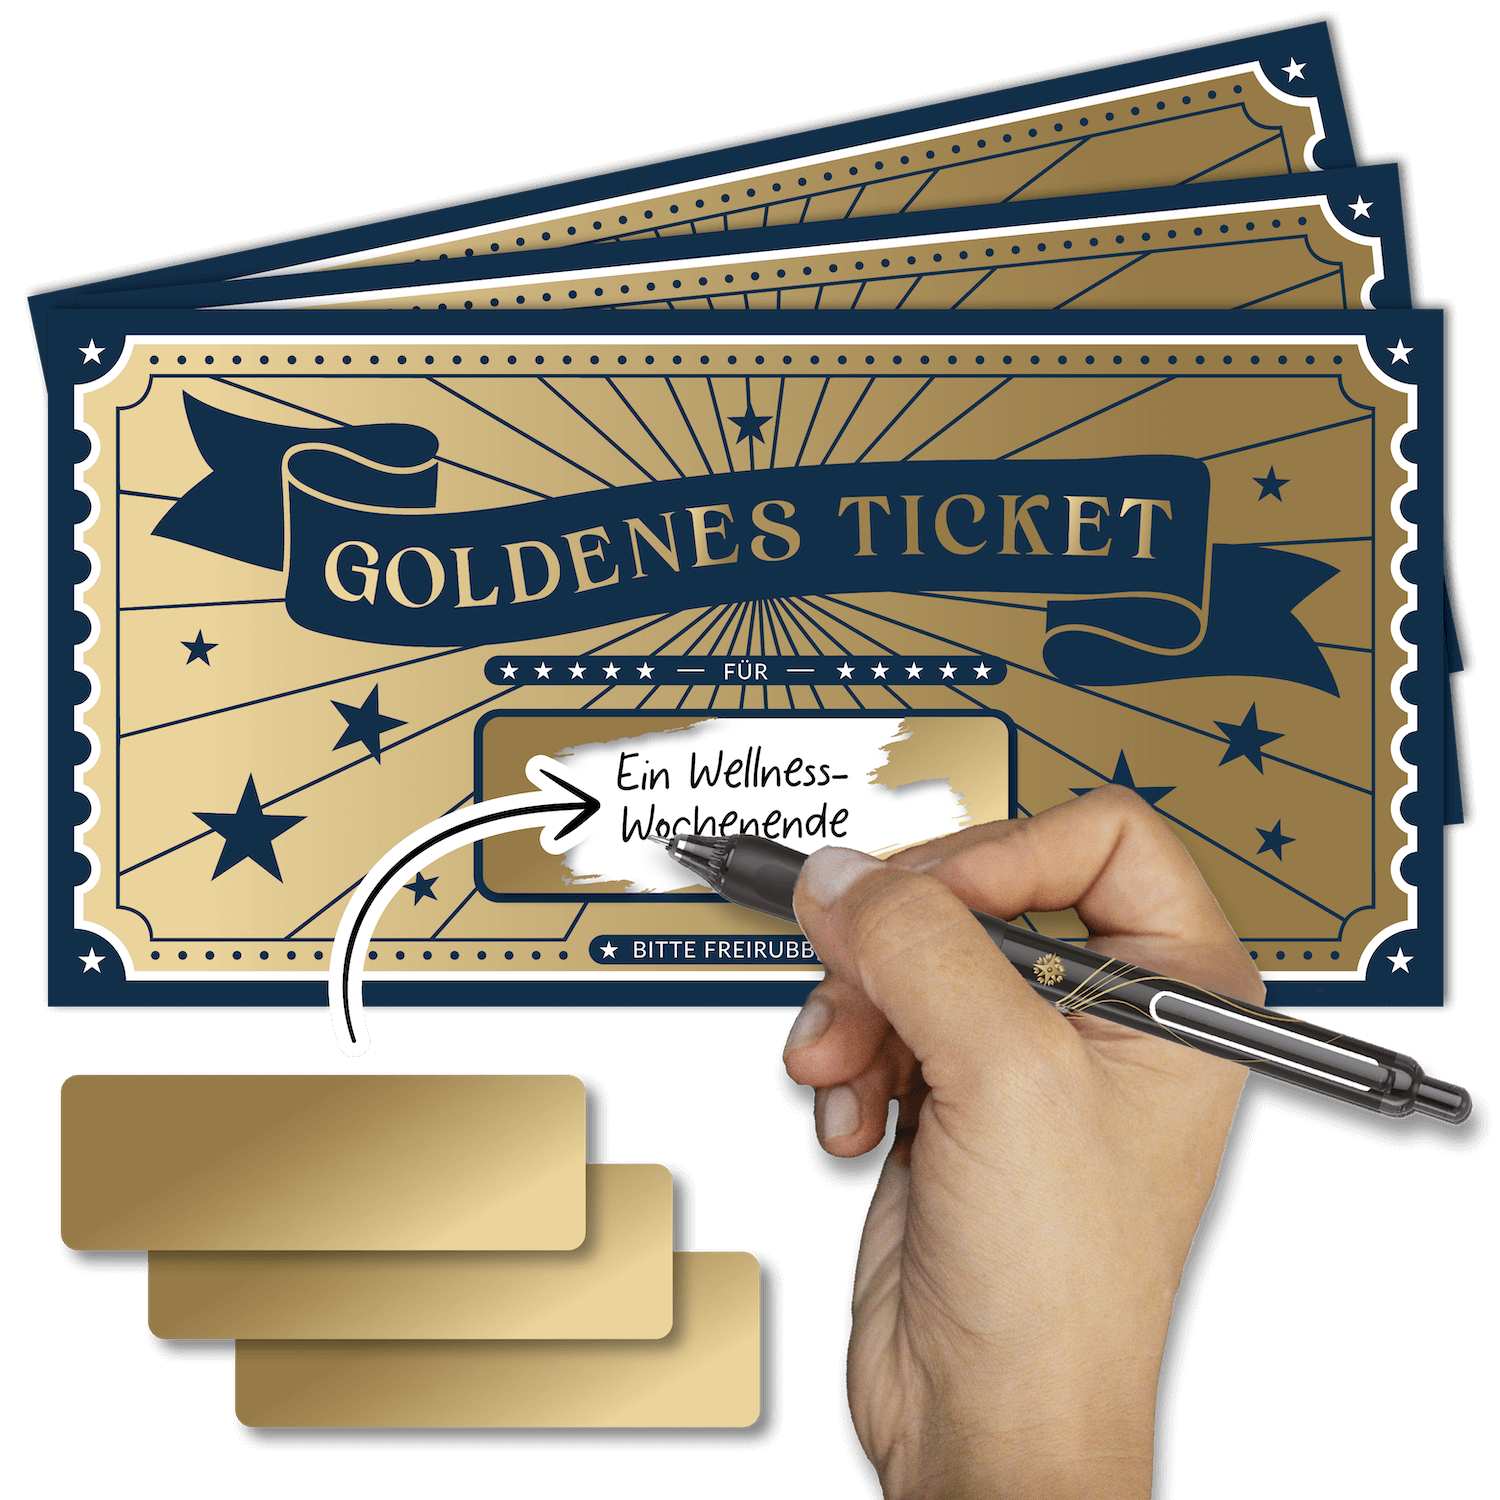 Goldenes Ticket - Gutschein zum Freirubbeln